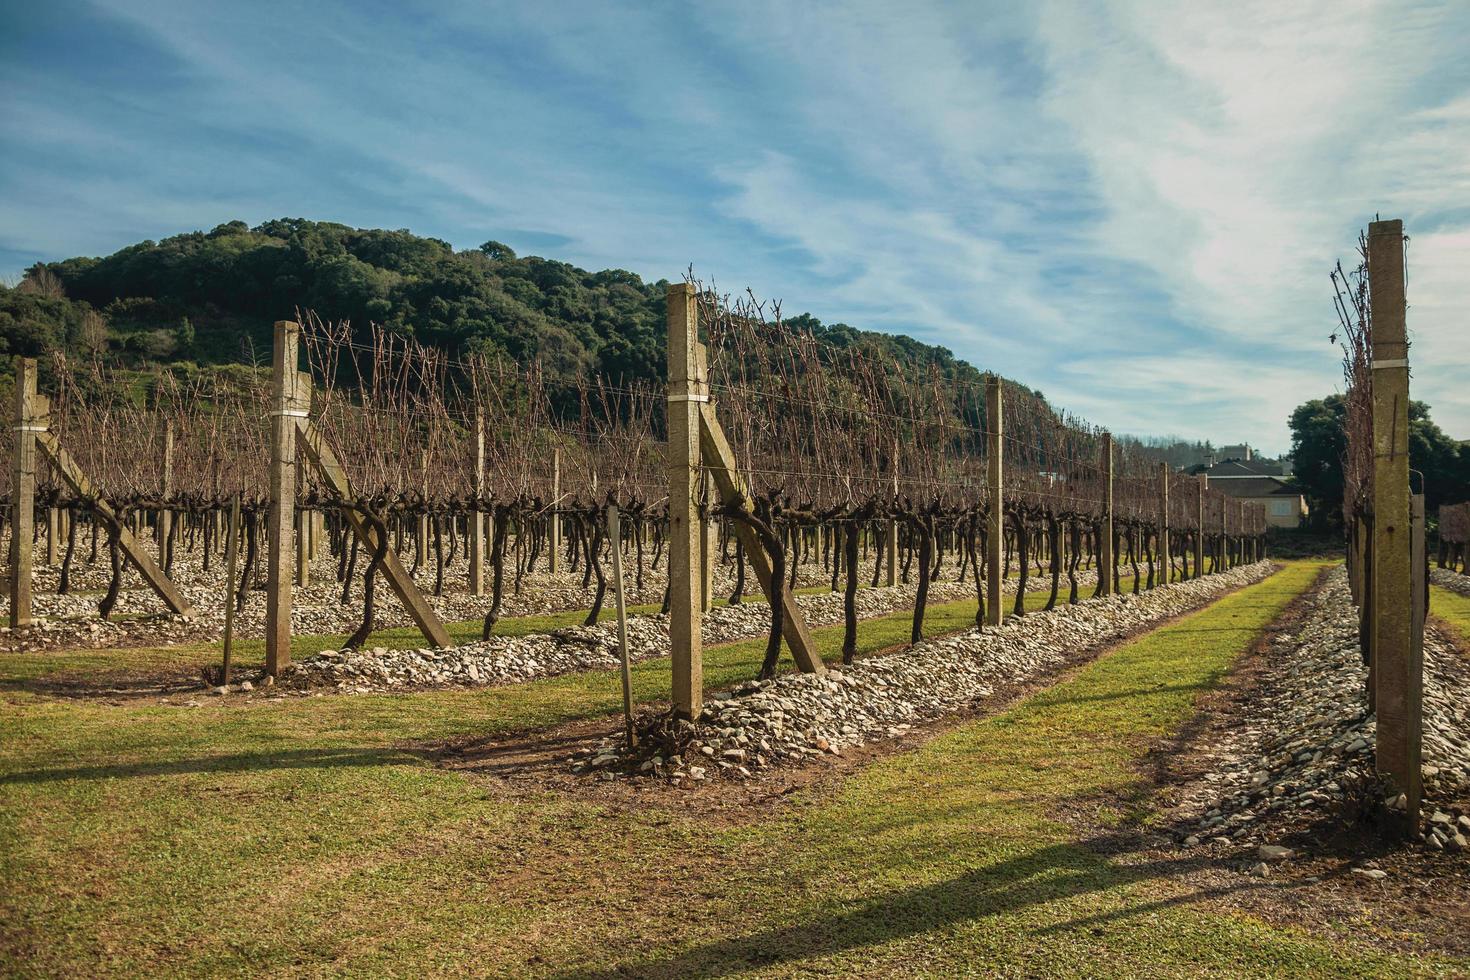 paysage avec quelques rangées de troncs et de branches de vigne sans feuilles en hiver près de bento goncalves. une ville de campagne sympathique dans le sud du brésil célèbre pour sa production de vin. photo